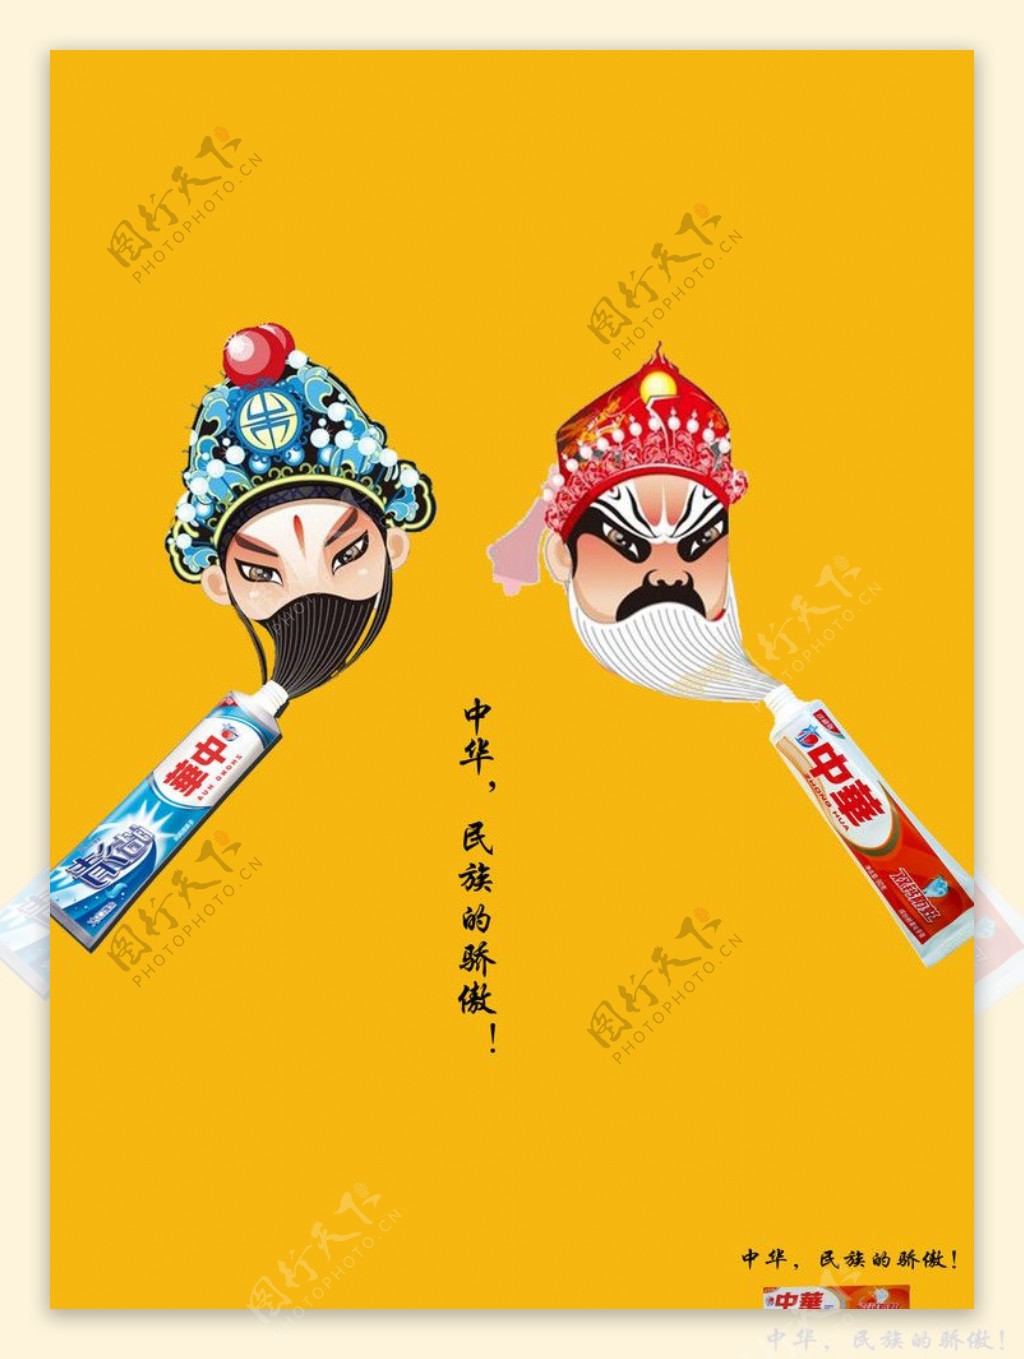 中华牙膏广告设计图片